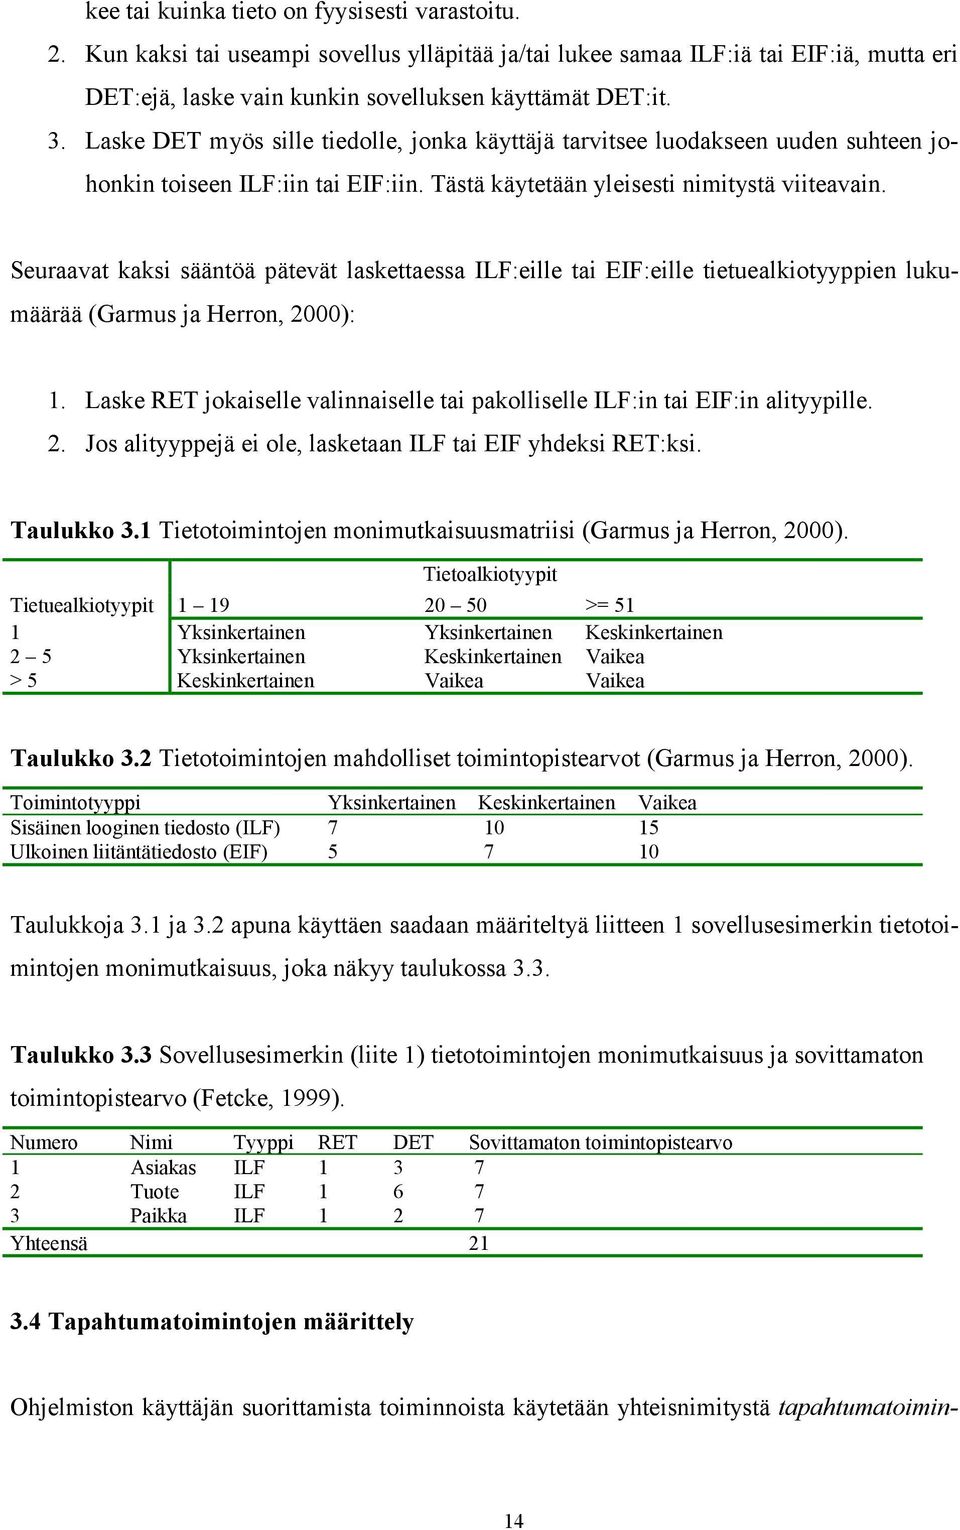 Seuraavat kaksi sääntöä pätevät laskettaessa ILF:eille tai EIF:eille tietuealkiotyyppien lukumäärää (Garmus ja Herron, 2000): 1.